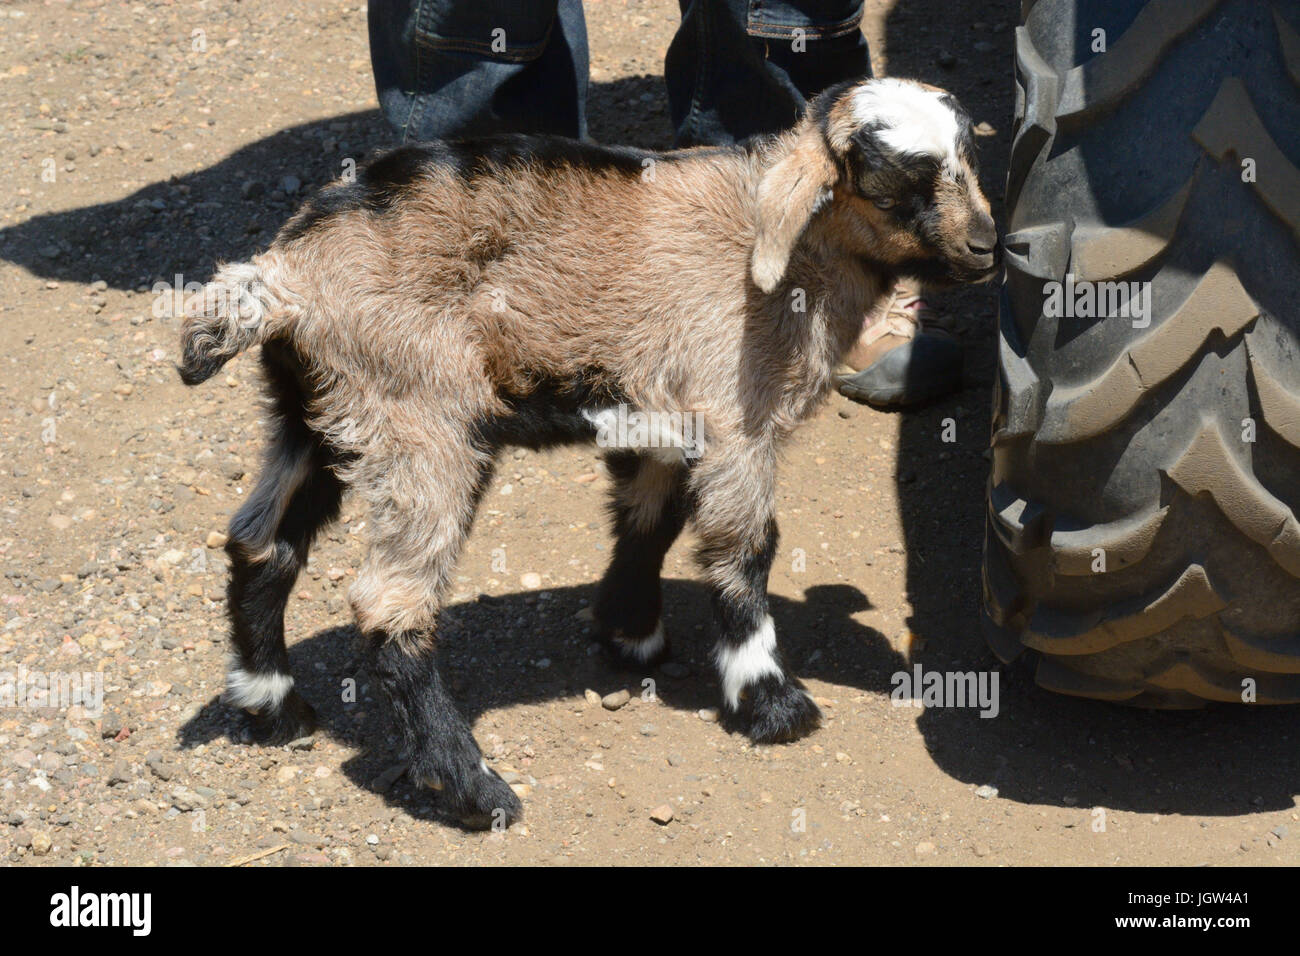 Eine Woche alte Neugeborene Kiko Ziege kid stehen neben dem Bauernhof ATV Fahrzeug Reifen Stockfoto